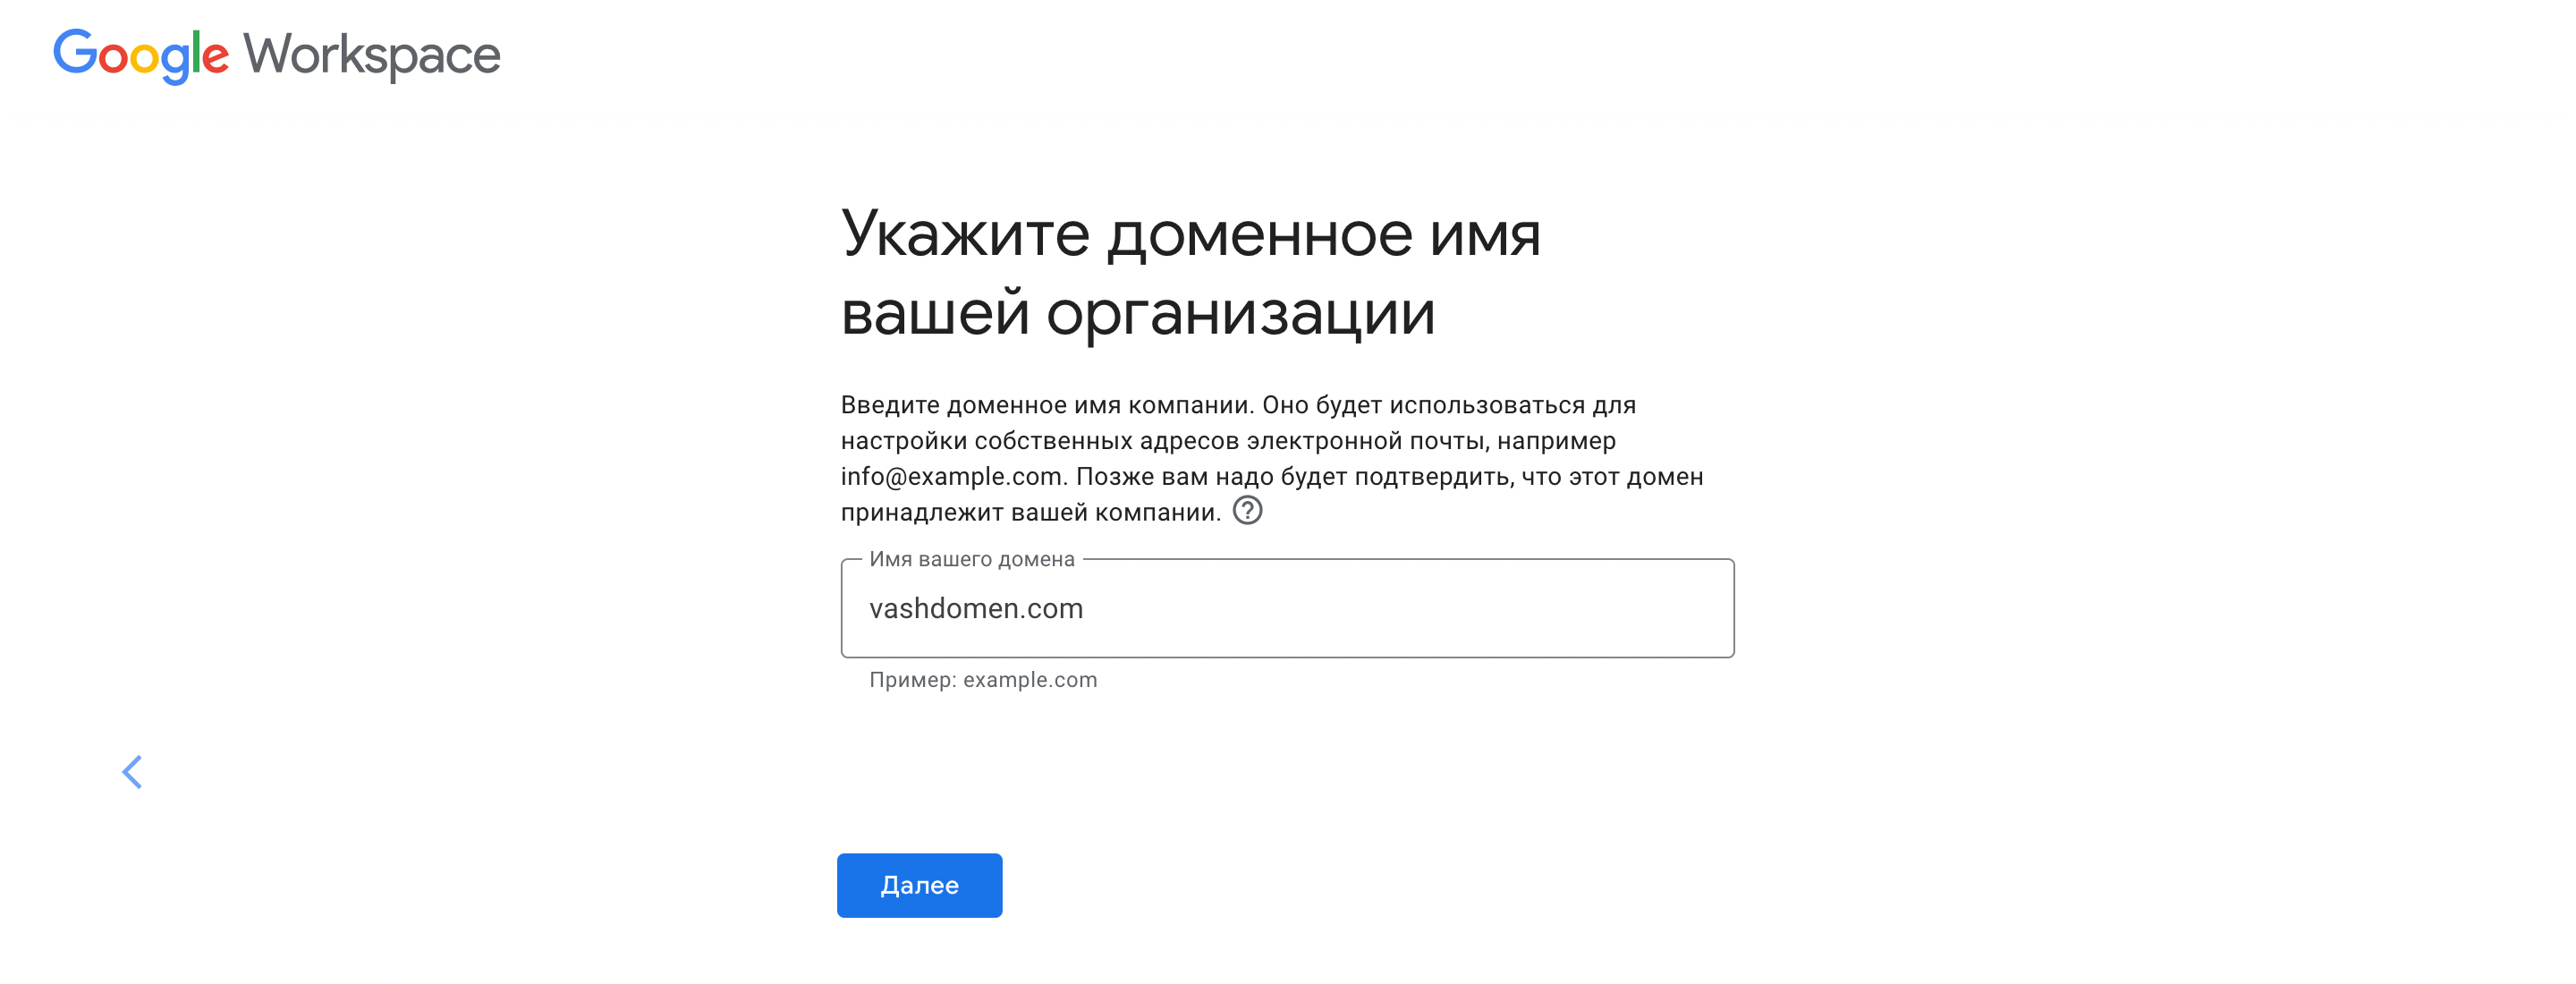 Корпоративная почта в Украине. Указываем домен для почты.